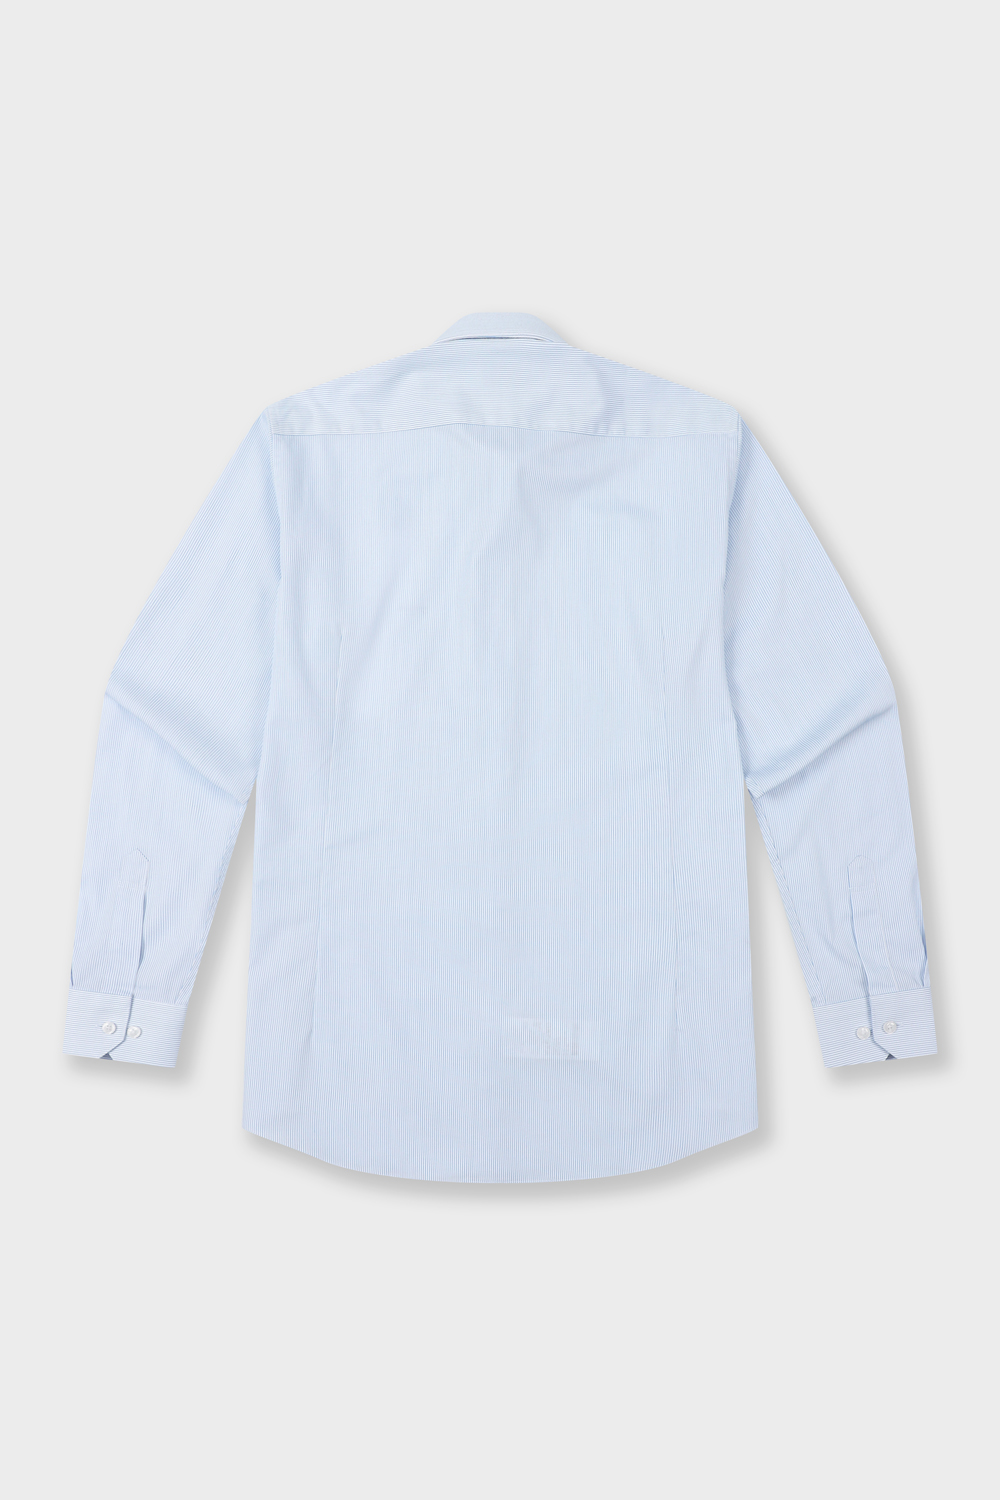 [공식스토어] 핀스트라이프 슬림핏 폴리혼방 셔츠 블루 YJ4SBS160BL